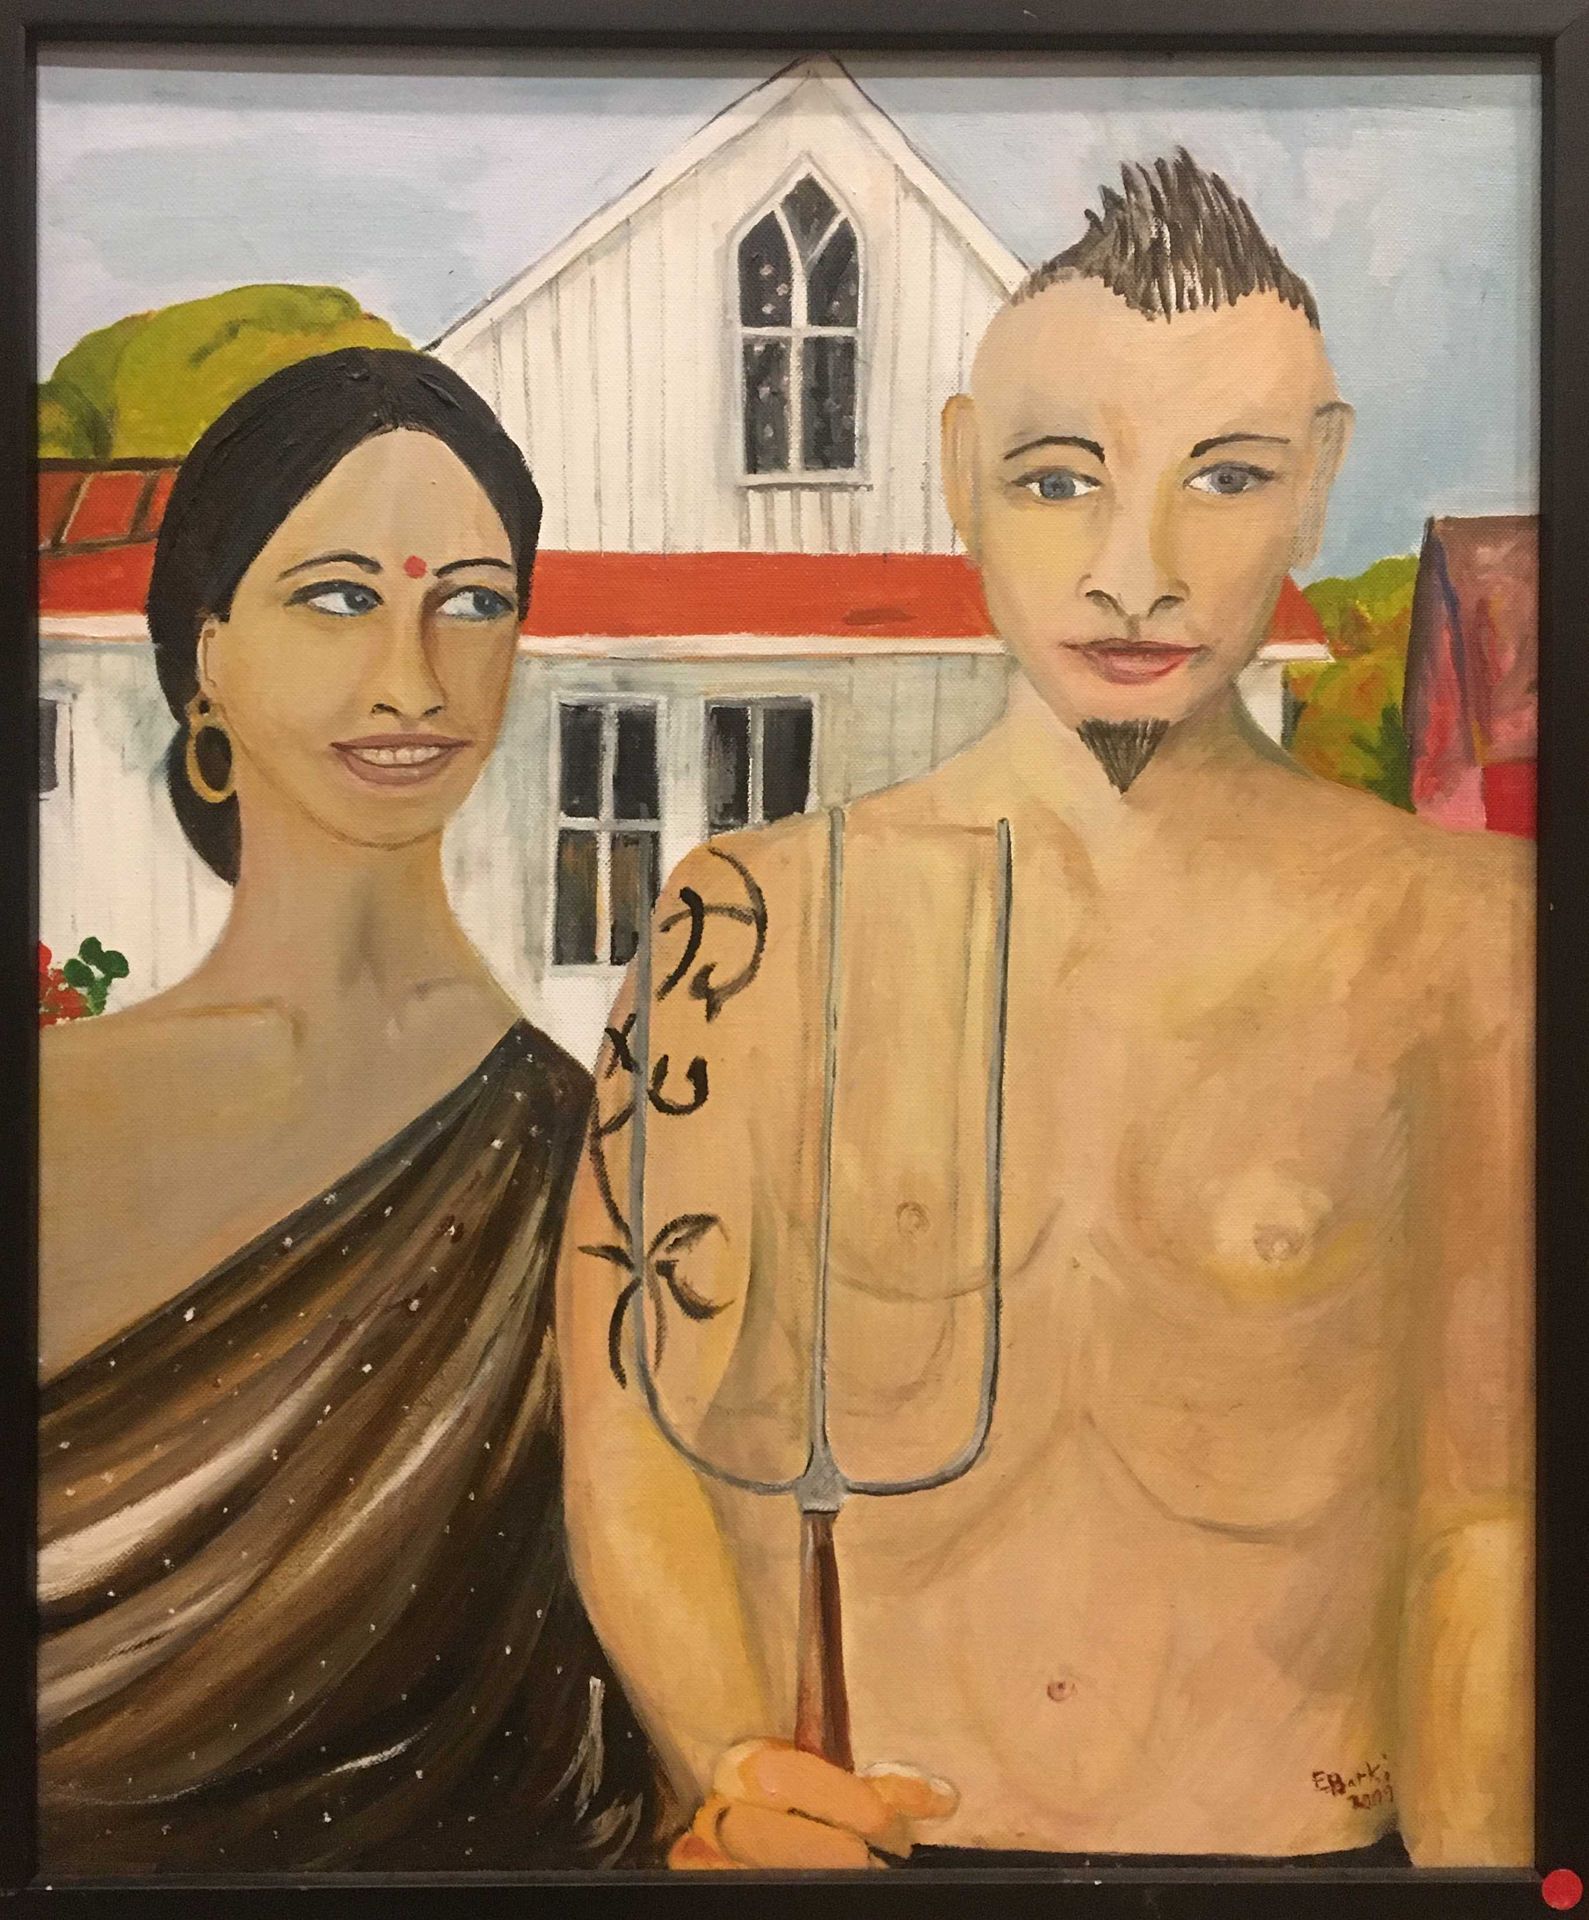 Null 巴尔基-埃琳娜 (生于1943年)

2009年夫妻俩

布面油画，右下角有签名和日期

55 x 46 厘米